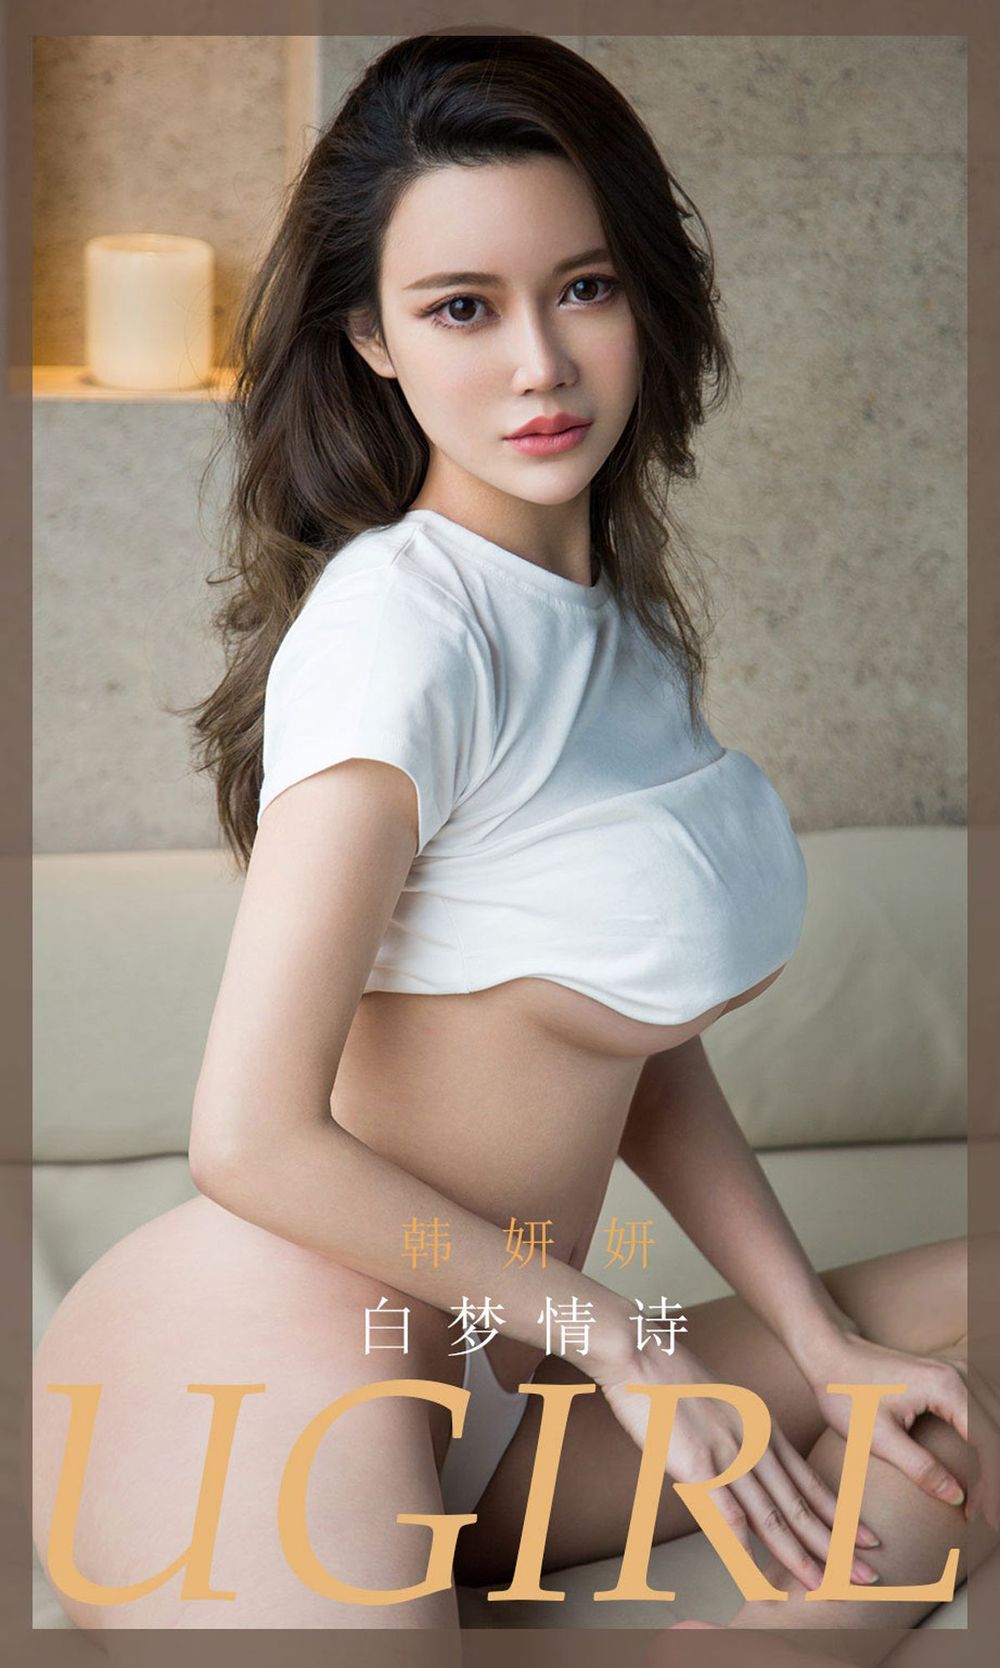 美女模特韩妍妍 - 白色服饰白梦情诗主题性感写真